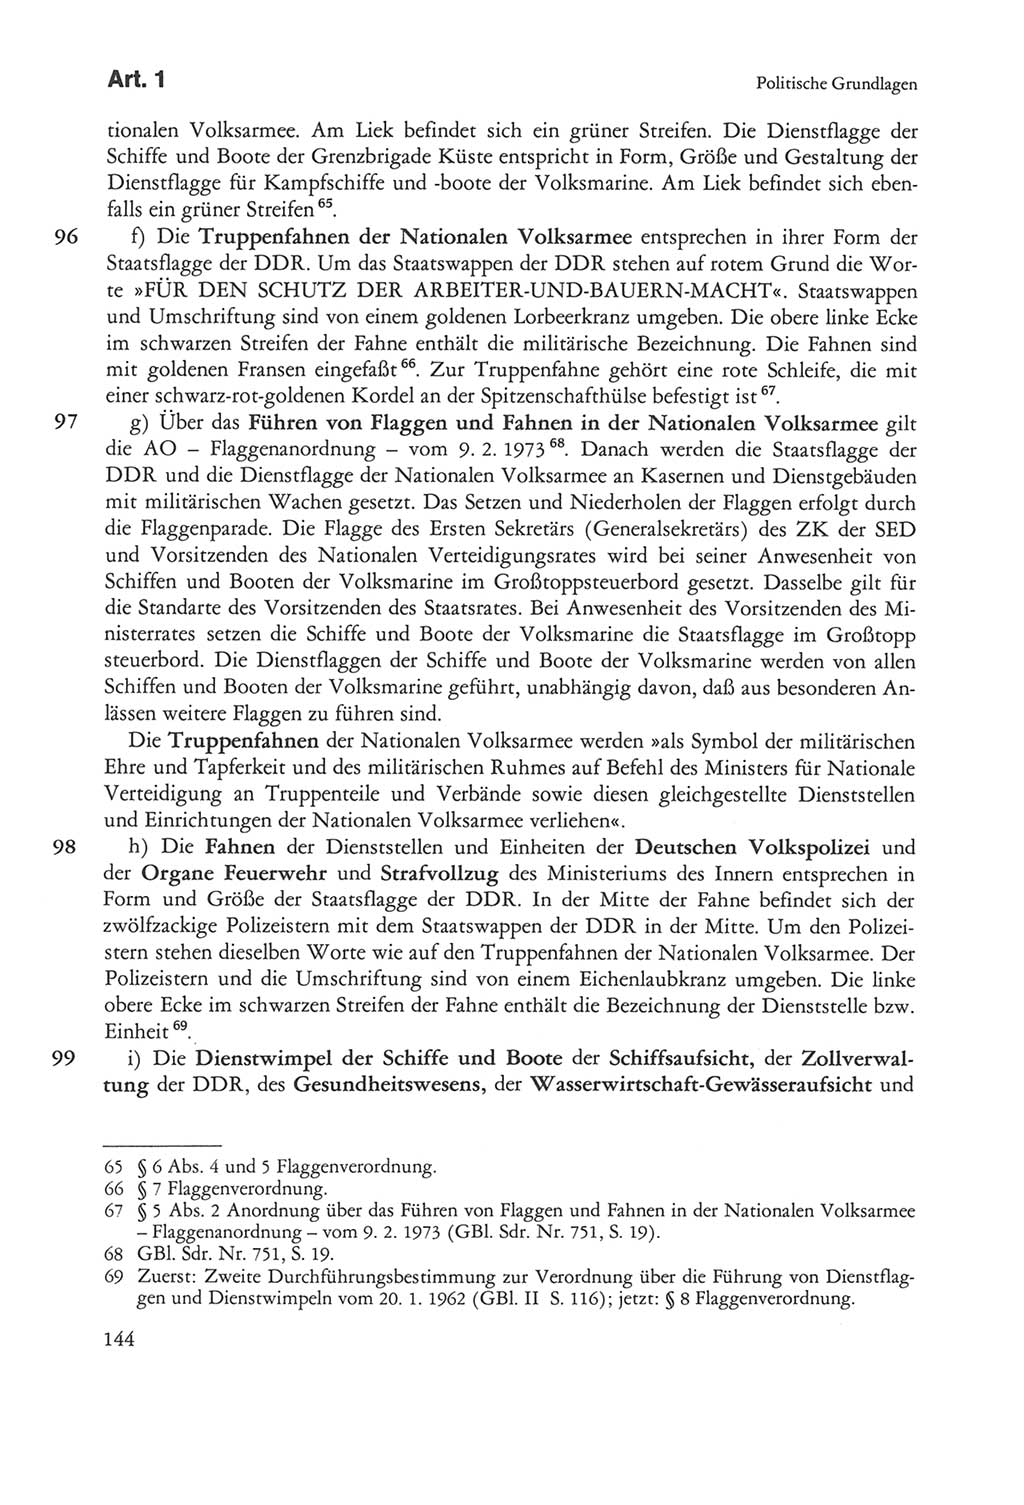 Die sozialistische Verfassung der Deutschen Demokratischen Republik (DDR), Kommentar mit einem Nachtrag 1997, Seite 144 (Soz. Verf. DDR Komm. Nachtr. 1997, S. 144)